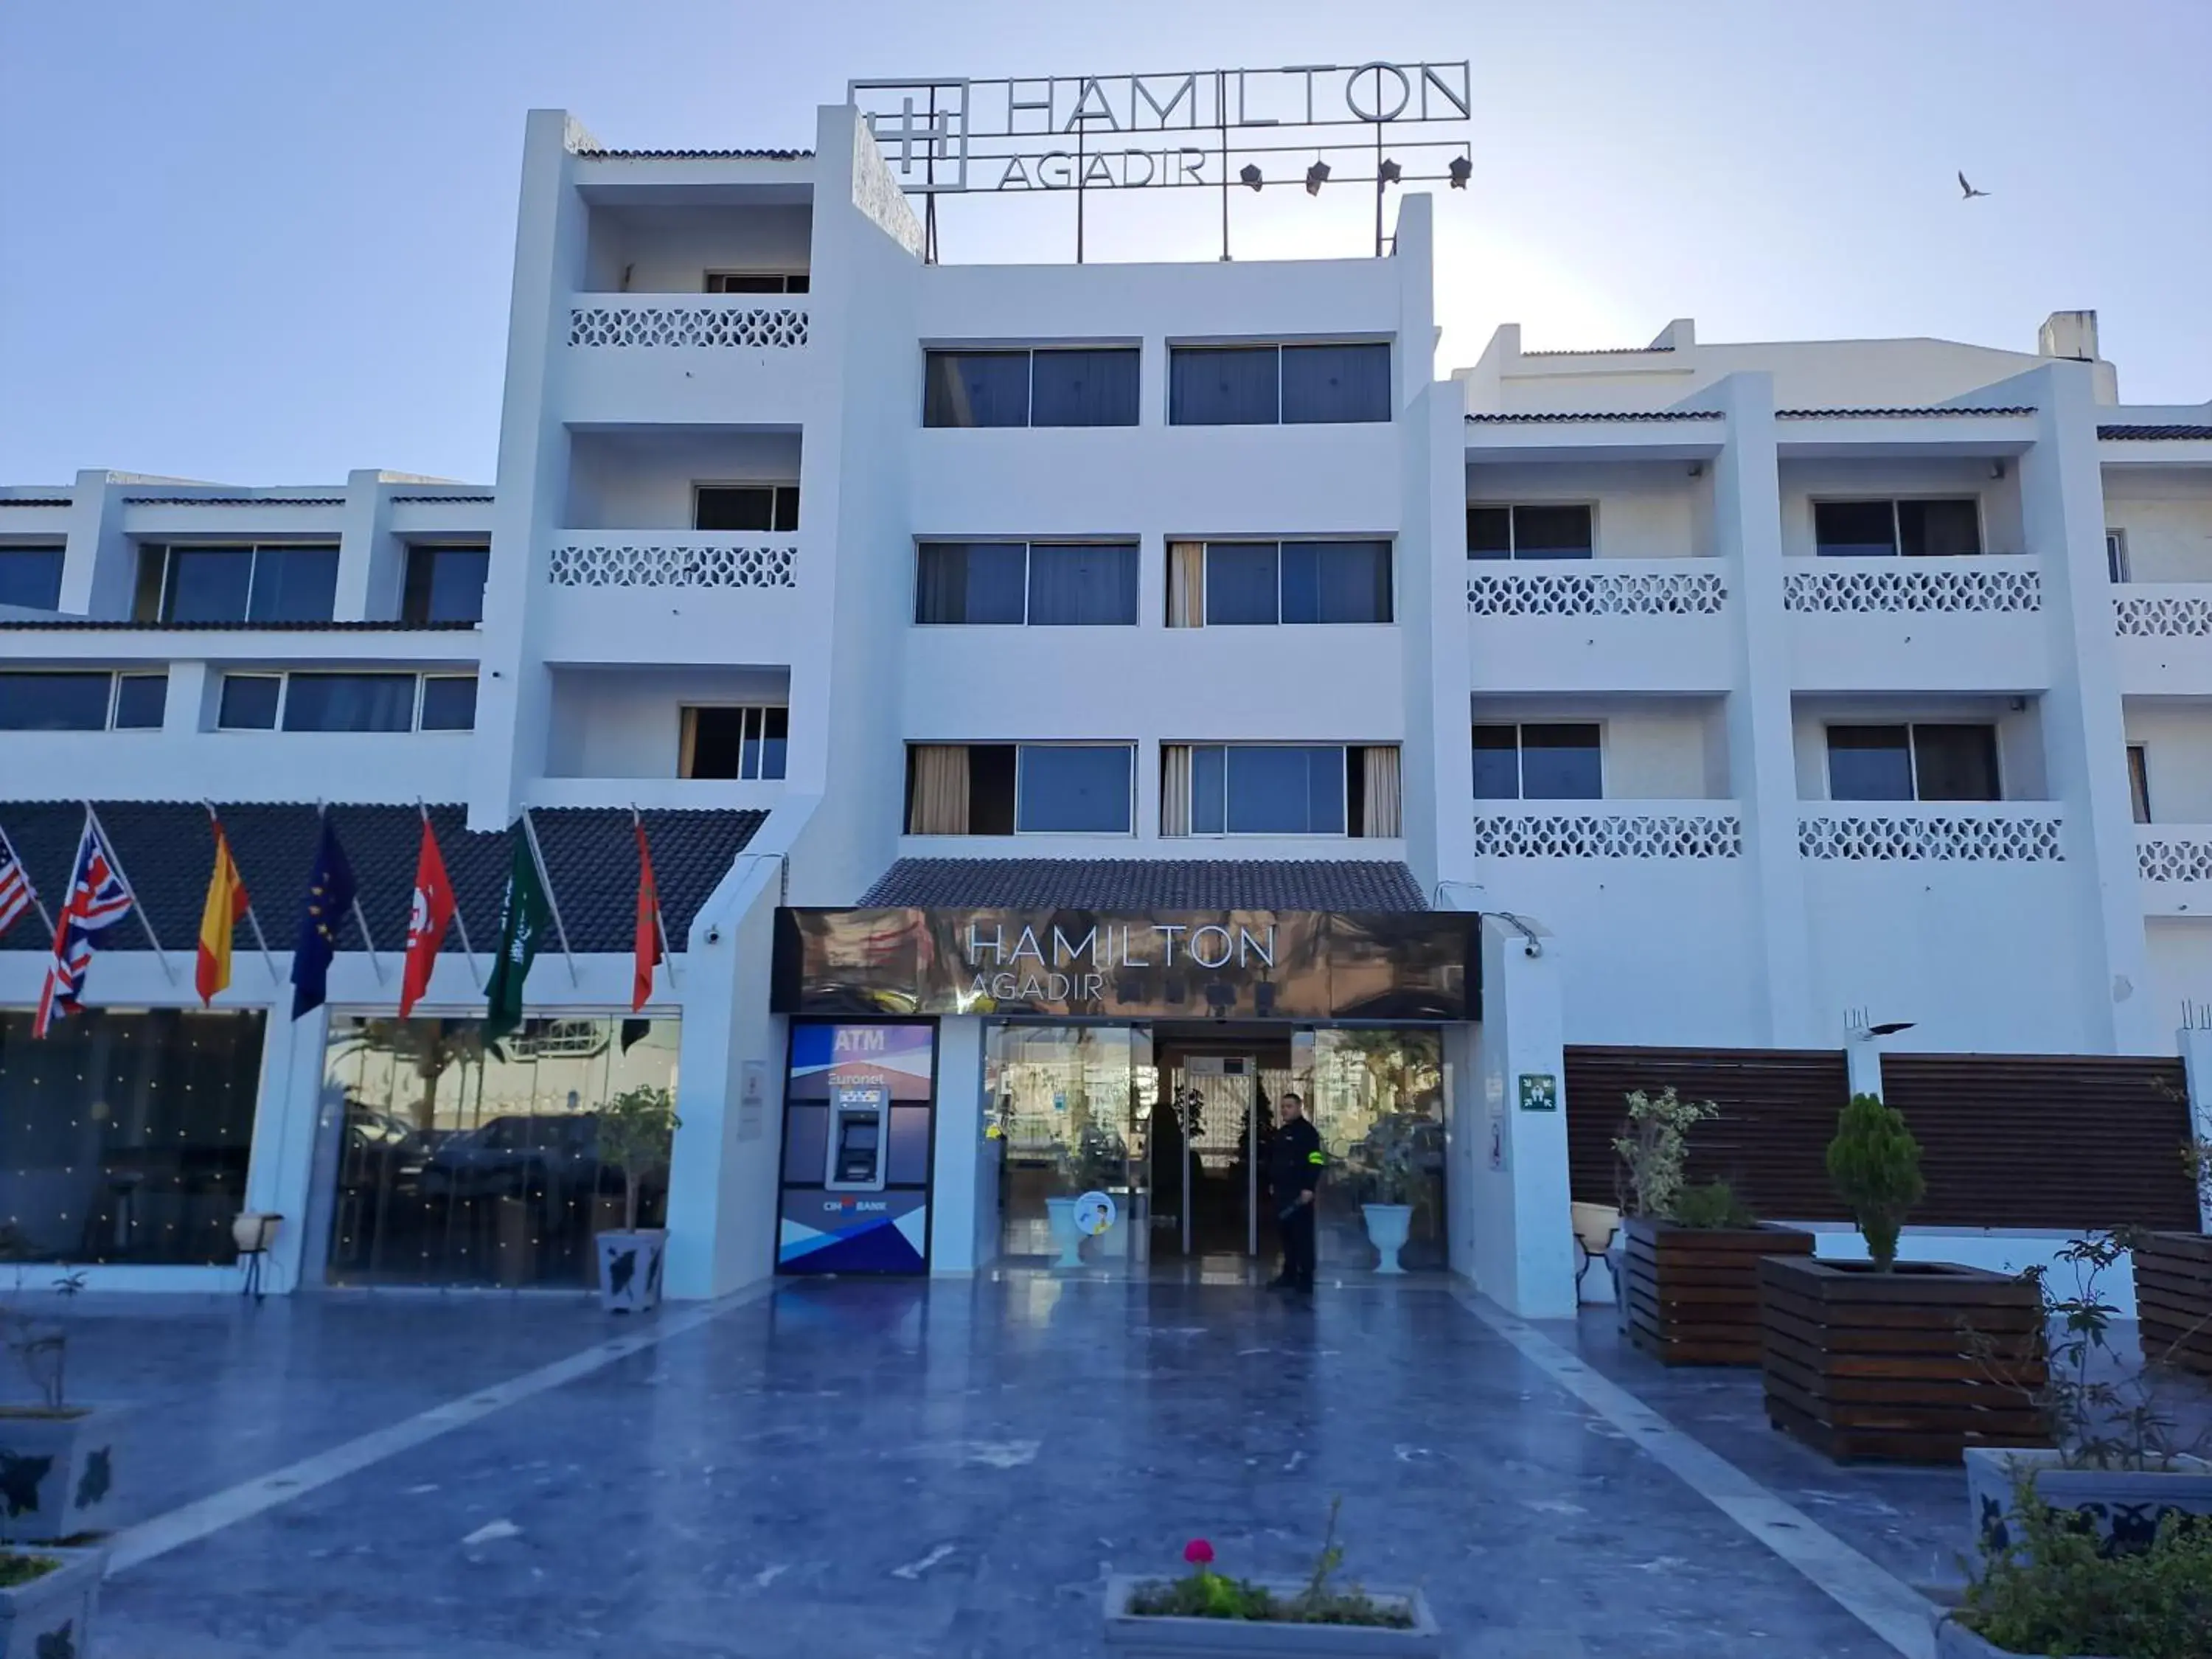 Facade/entrance, Property Building in HAMILTON Agadir